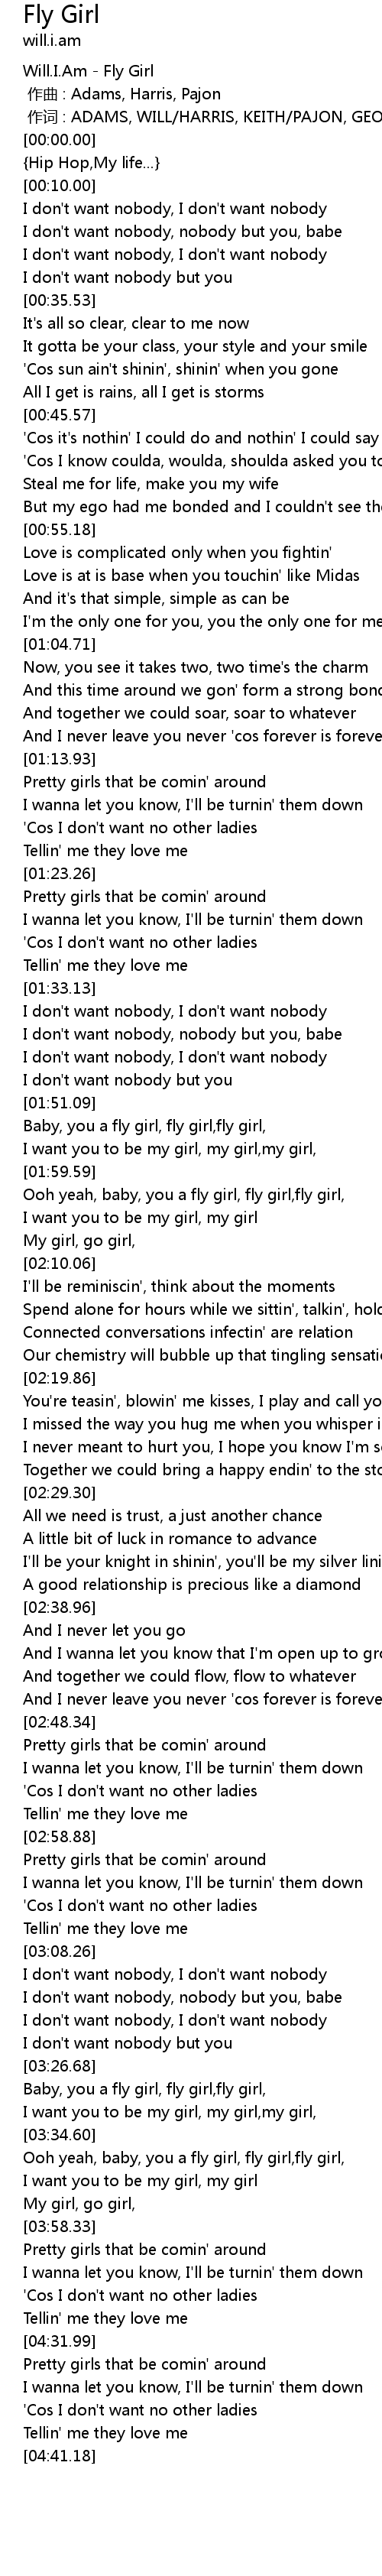 Fly Girl Lyrics Follow Lyrics